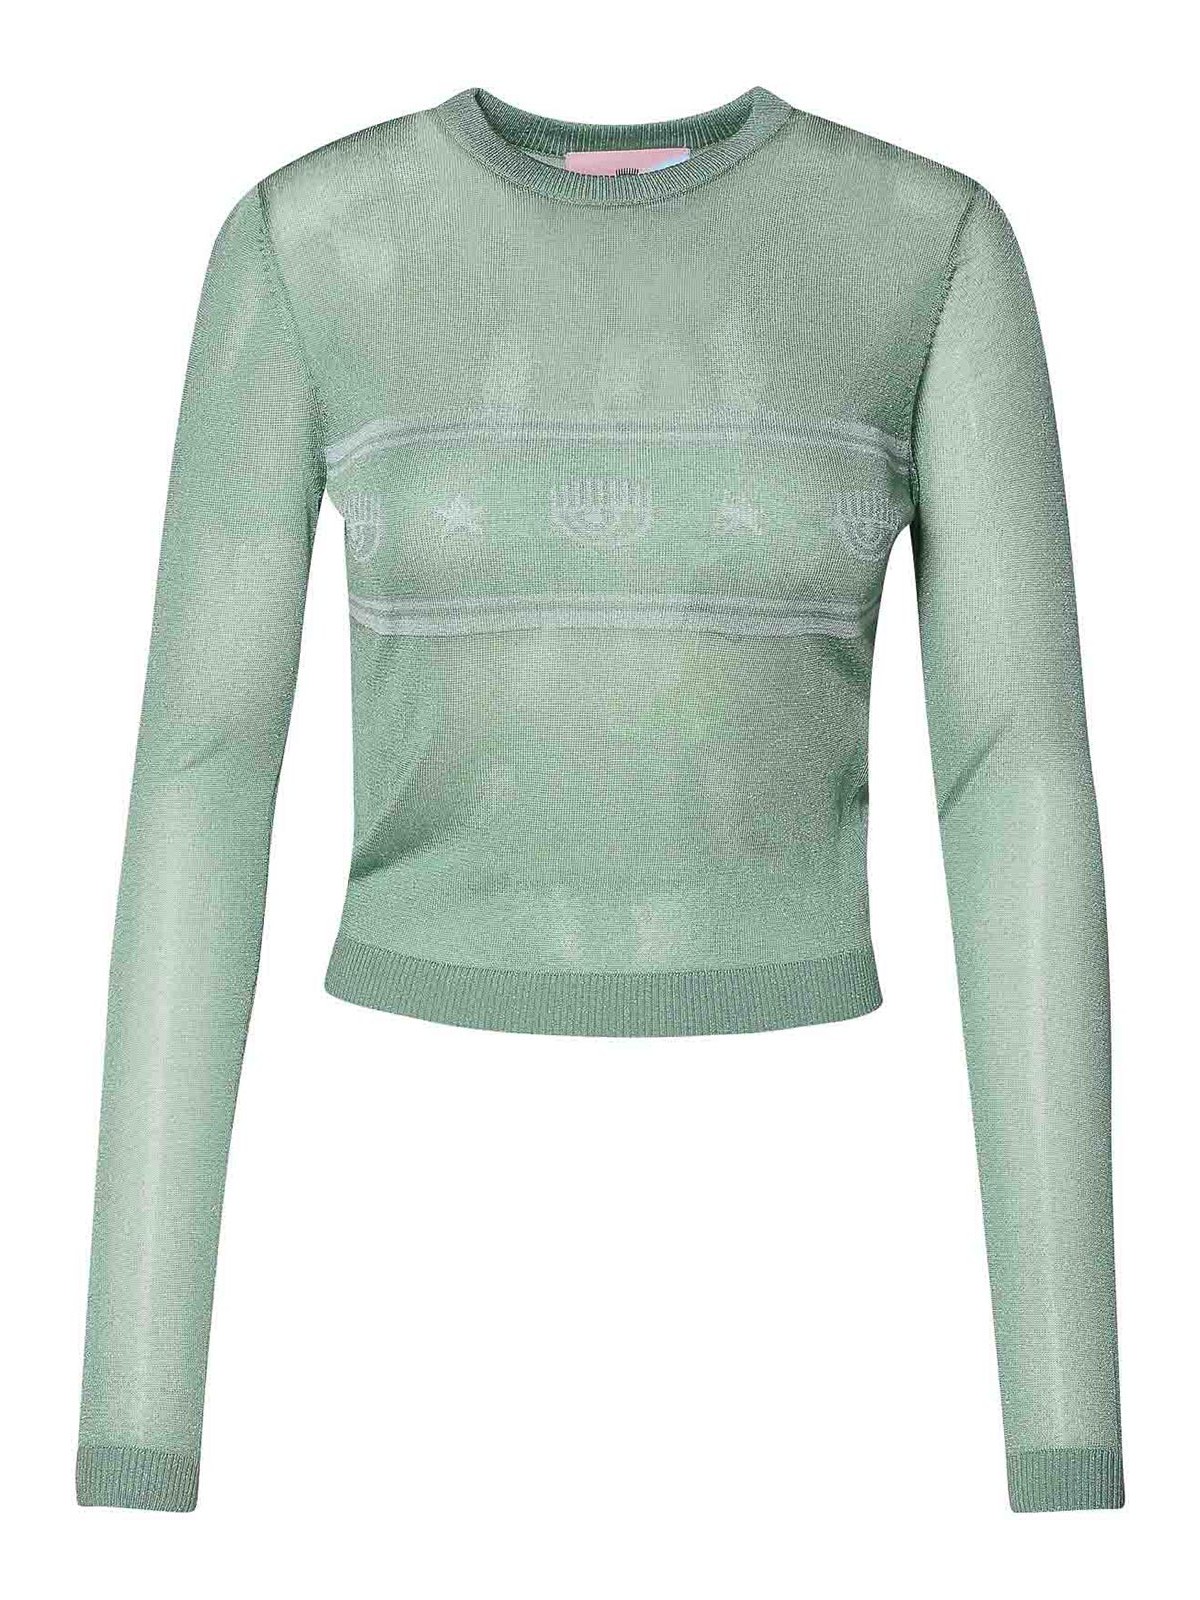 Shop Chiara Ferragni Green Viscose Blend Sweater